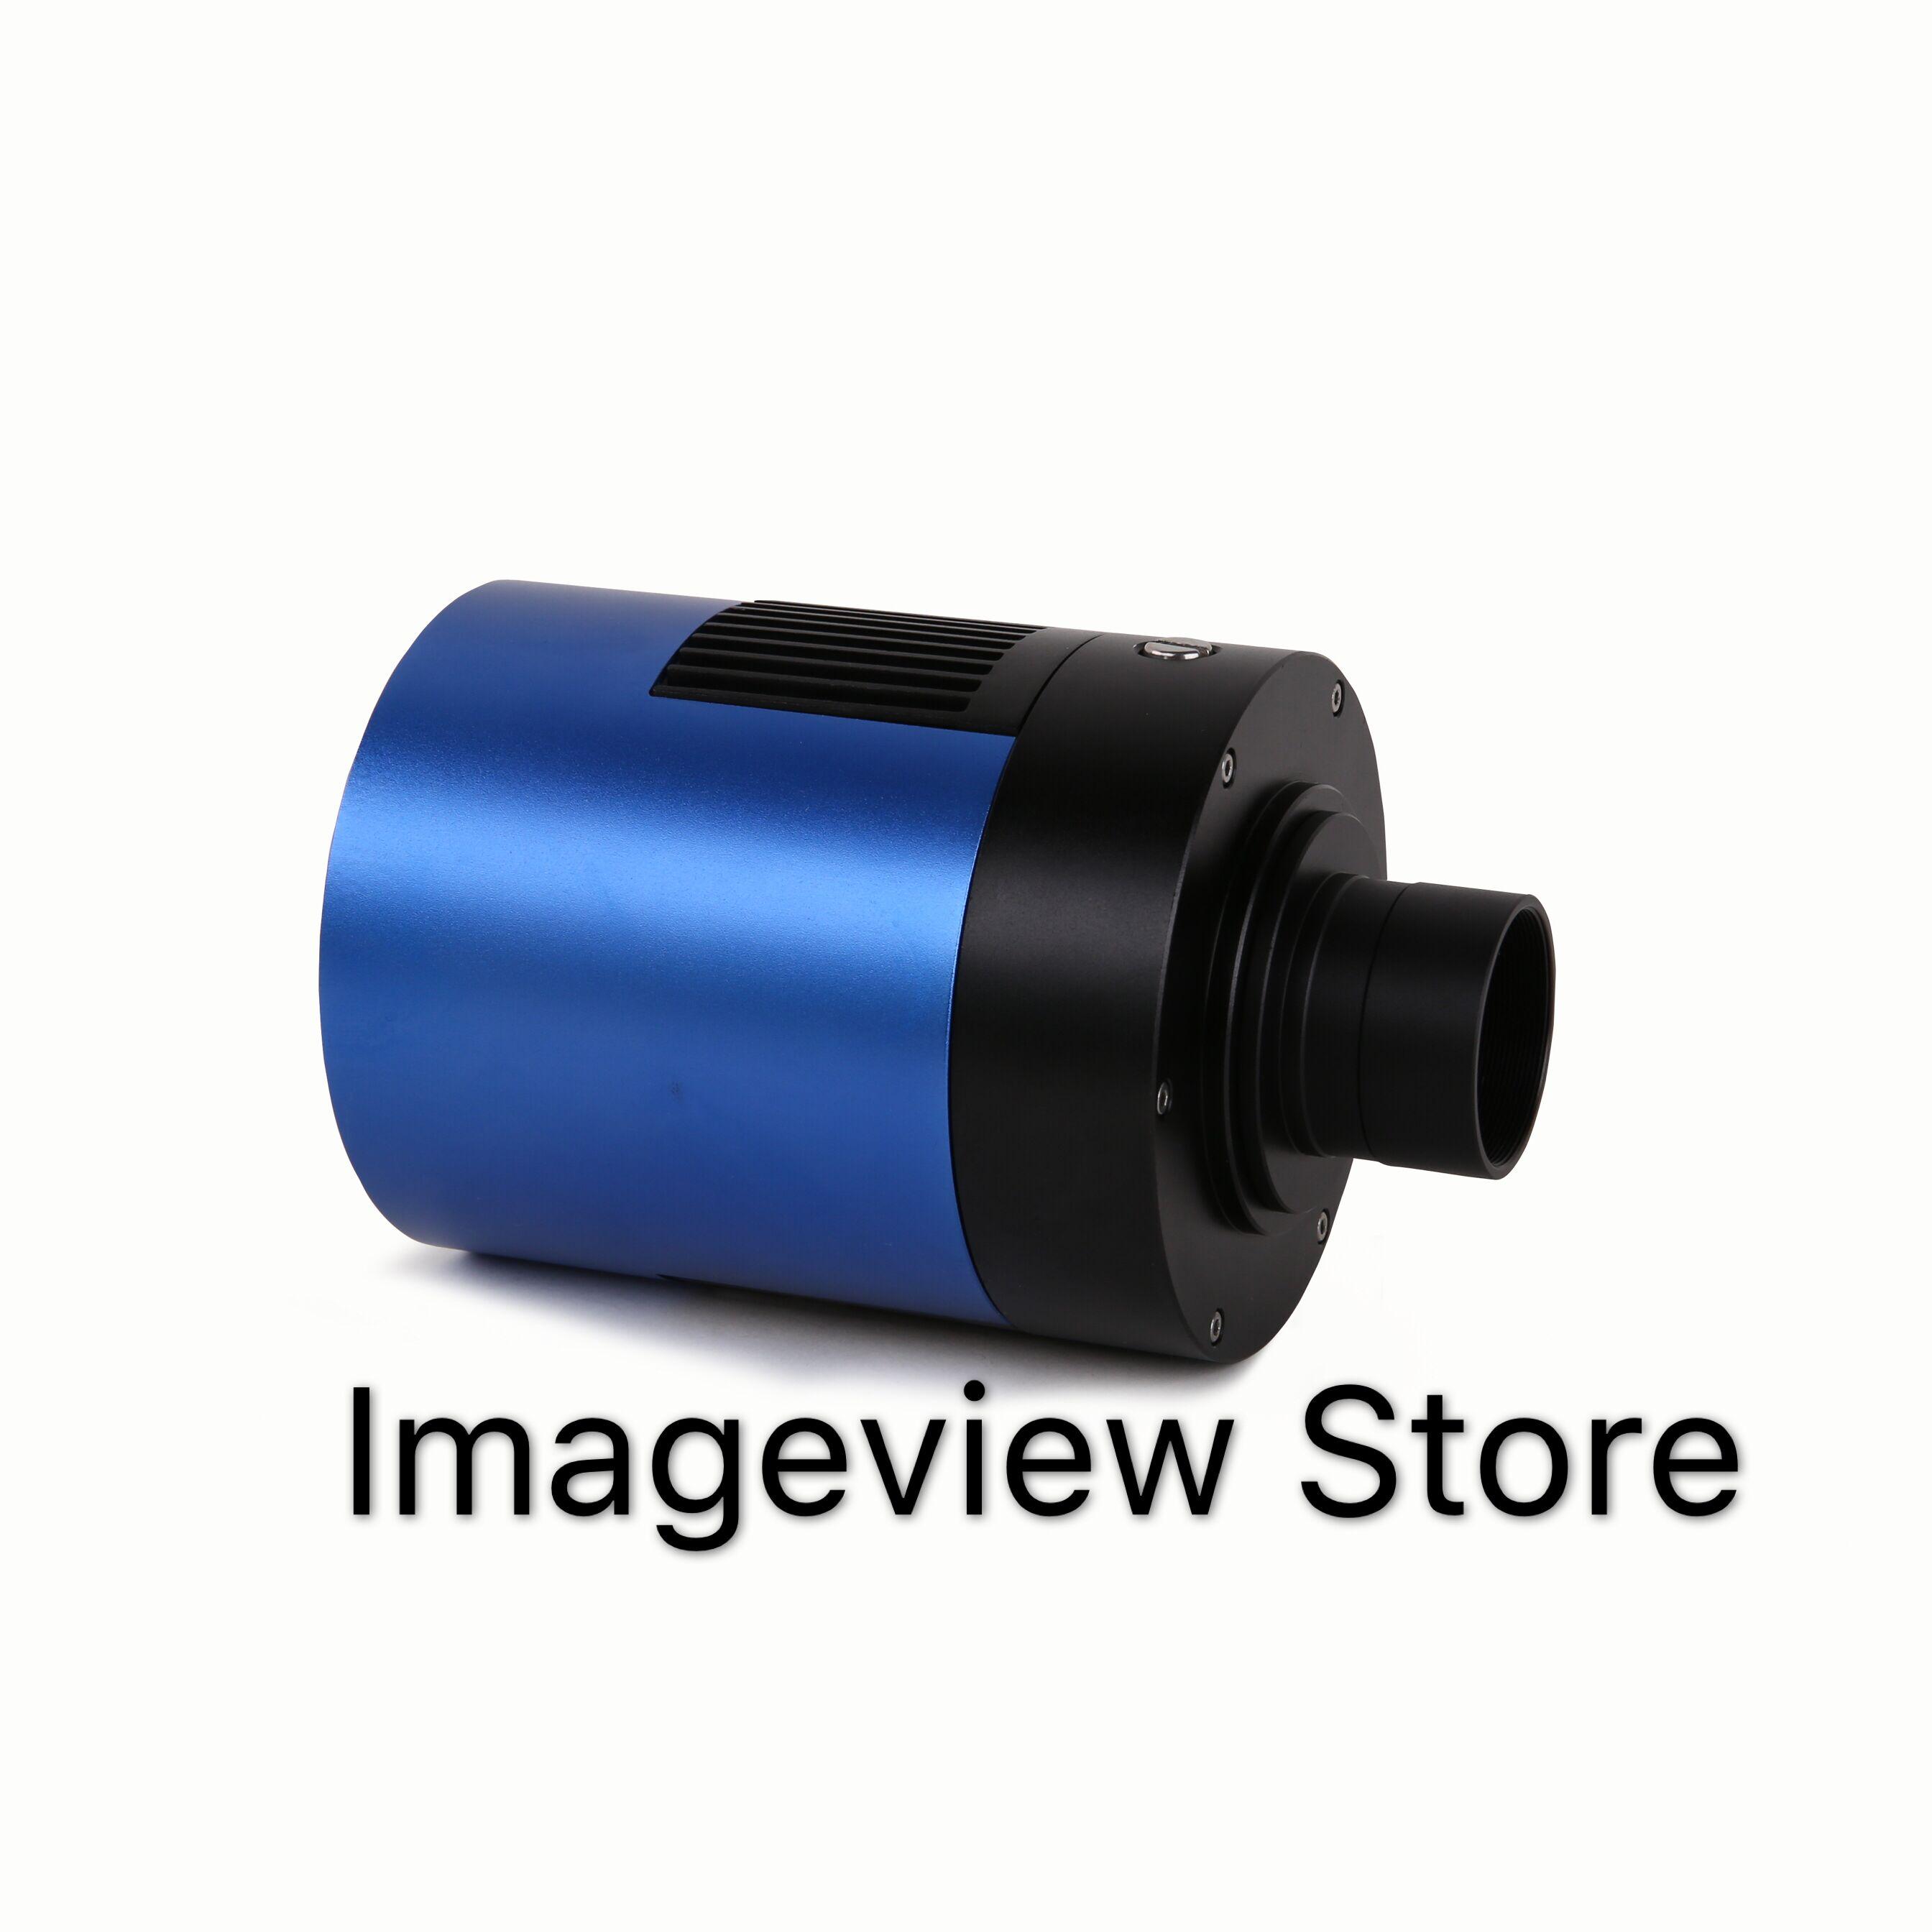 Изображение товара: Цветная камера 16 МП, USB3.0, охлаждающая, с CMOS-сенсором Panasonic 4/3 дюйма